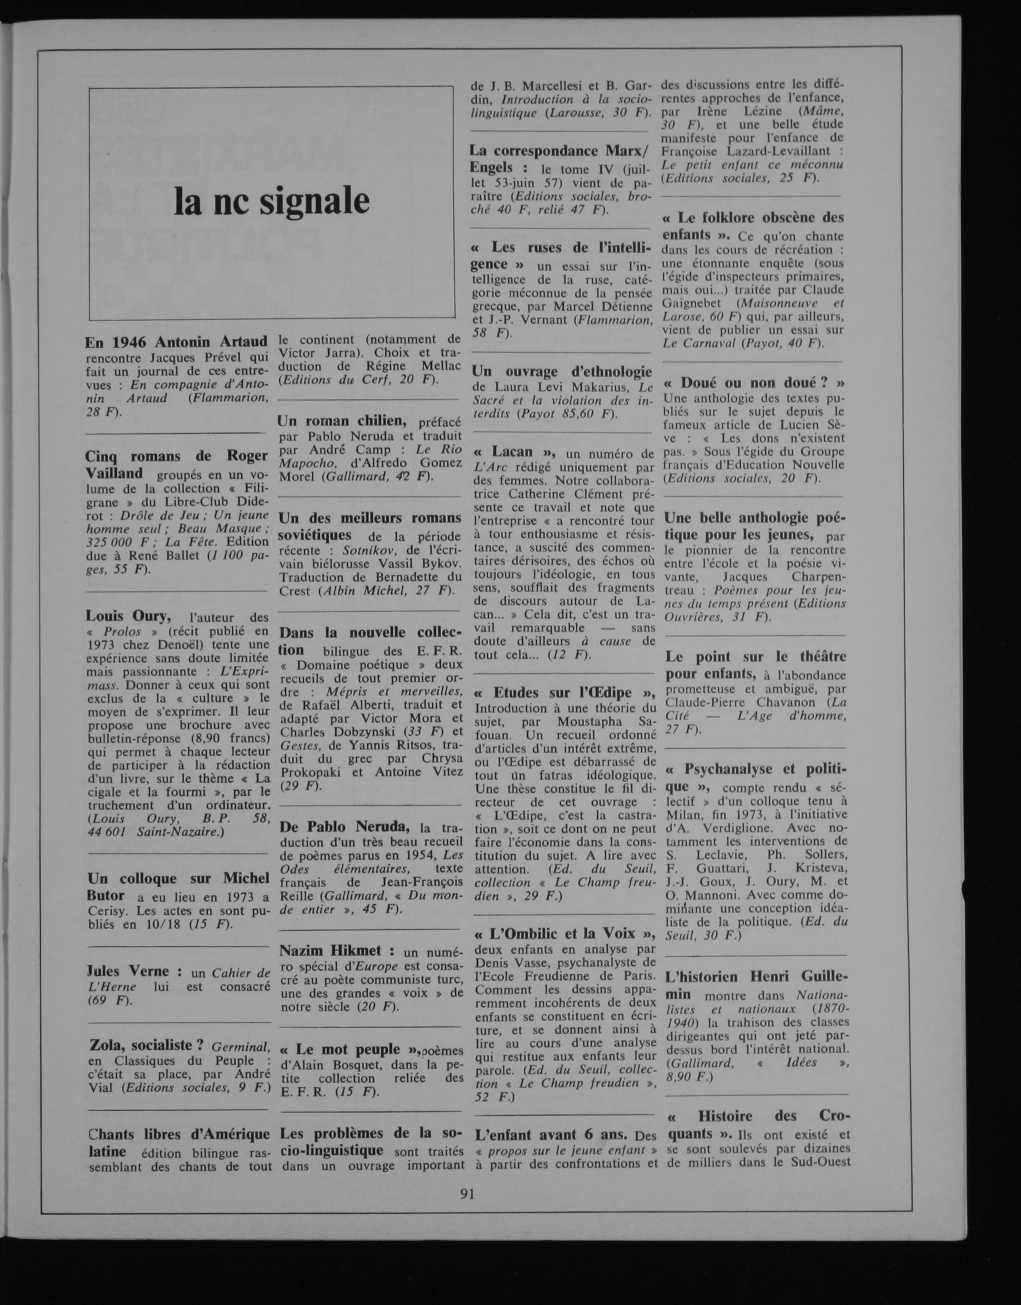 la nc signale En 1946 Antonin Artaud le continent (notamment de rencontre Jacques Frevel quiictor V Jarra). Choix et trafait un journal de ces entre- duction de Regine Mellac Editions du Cerf, 20 F).